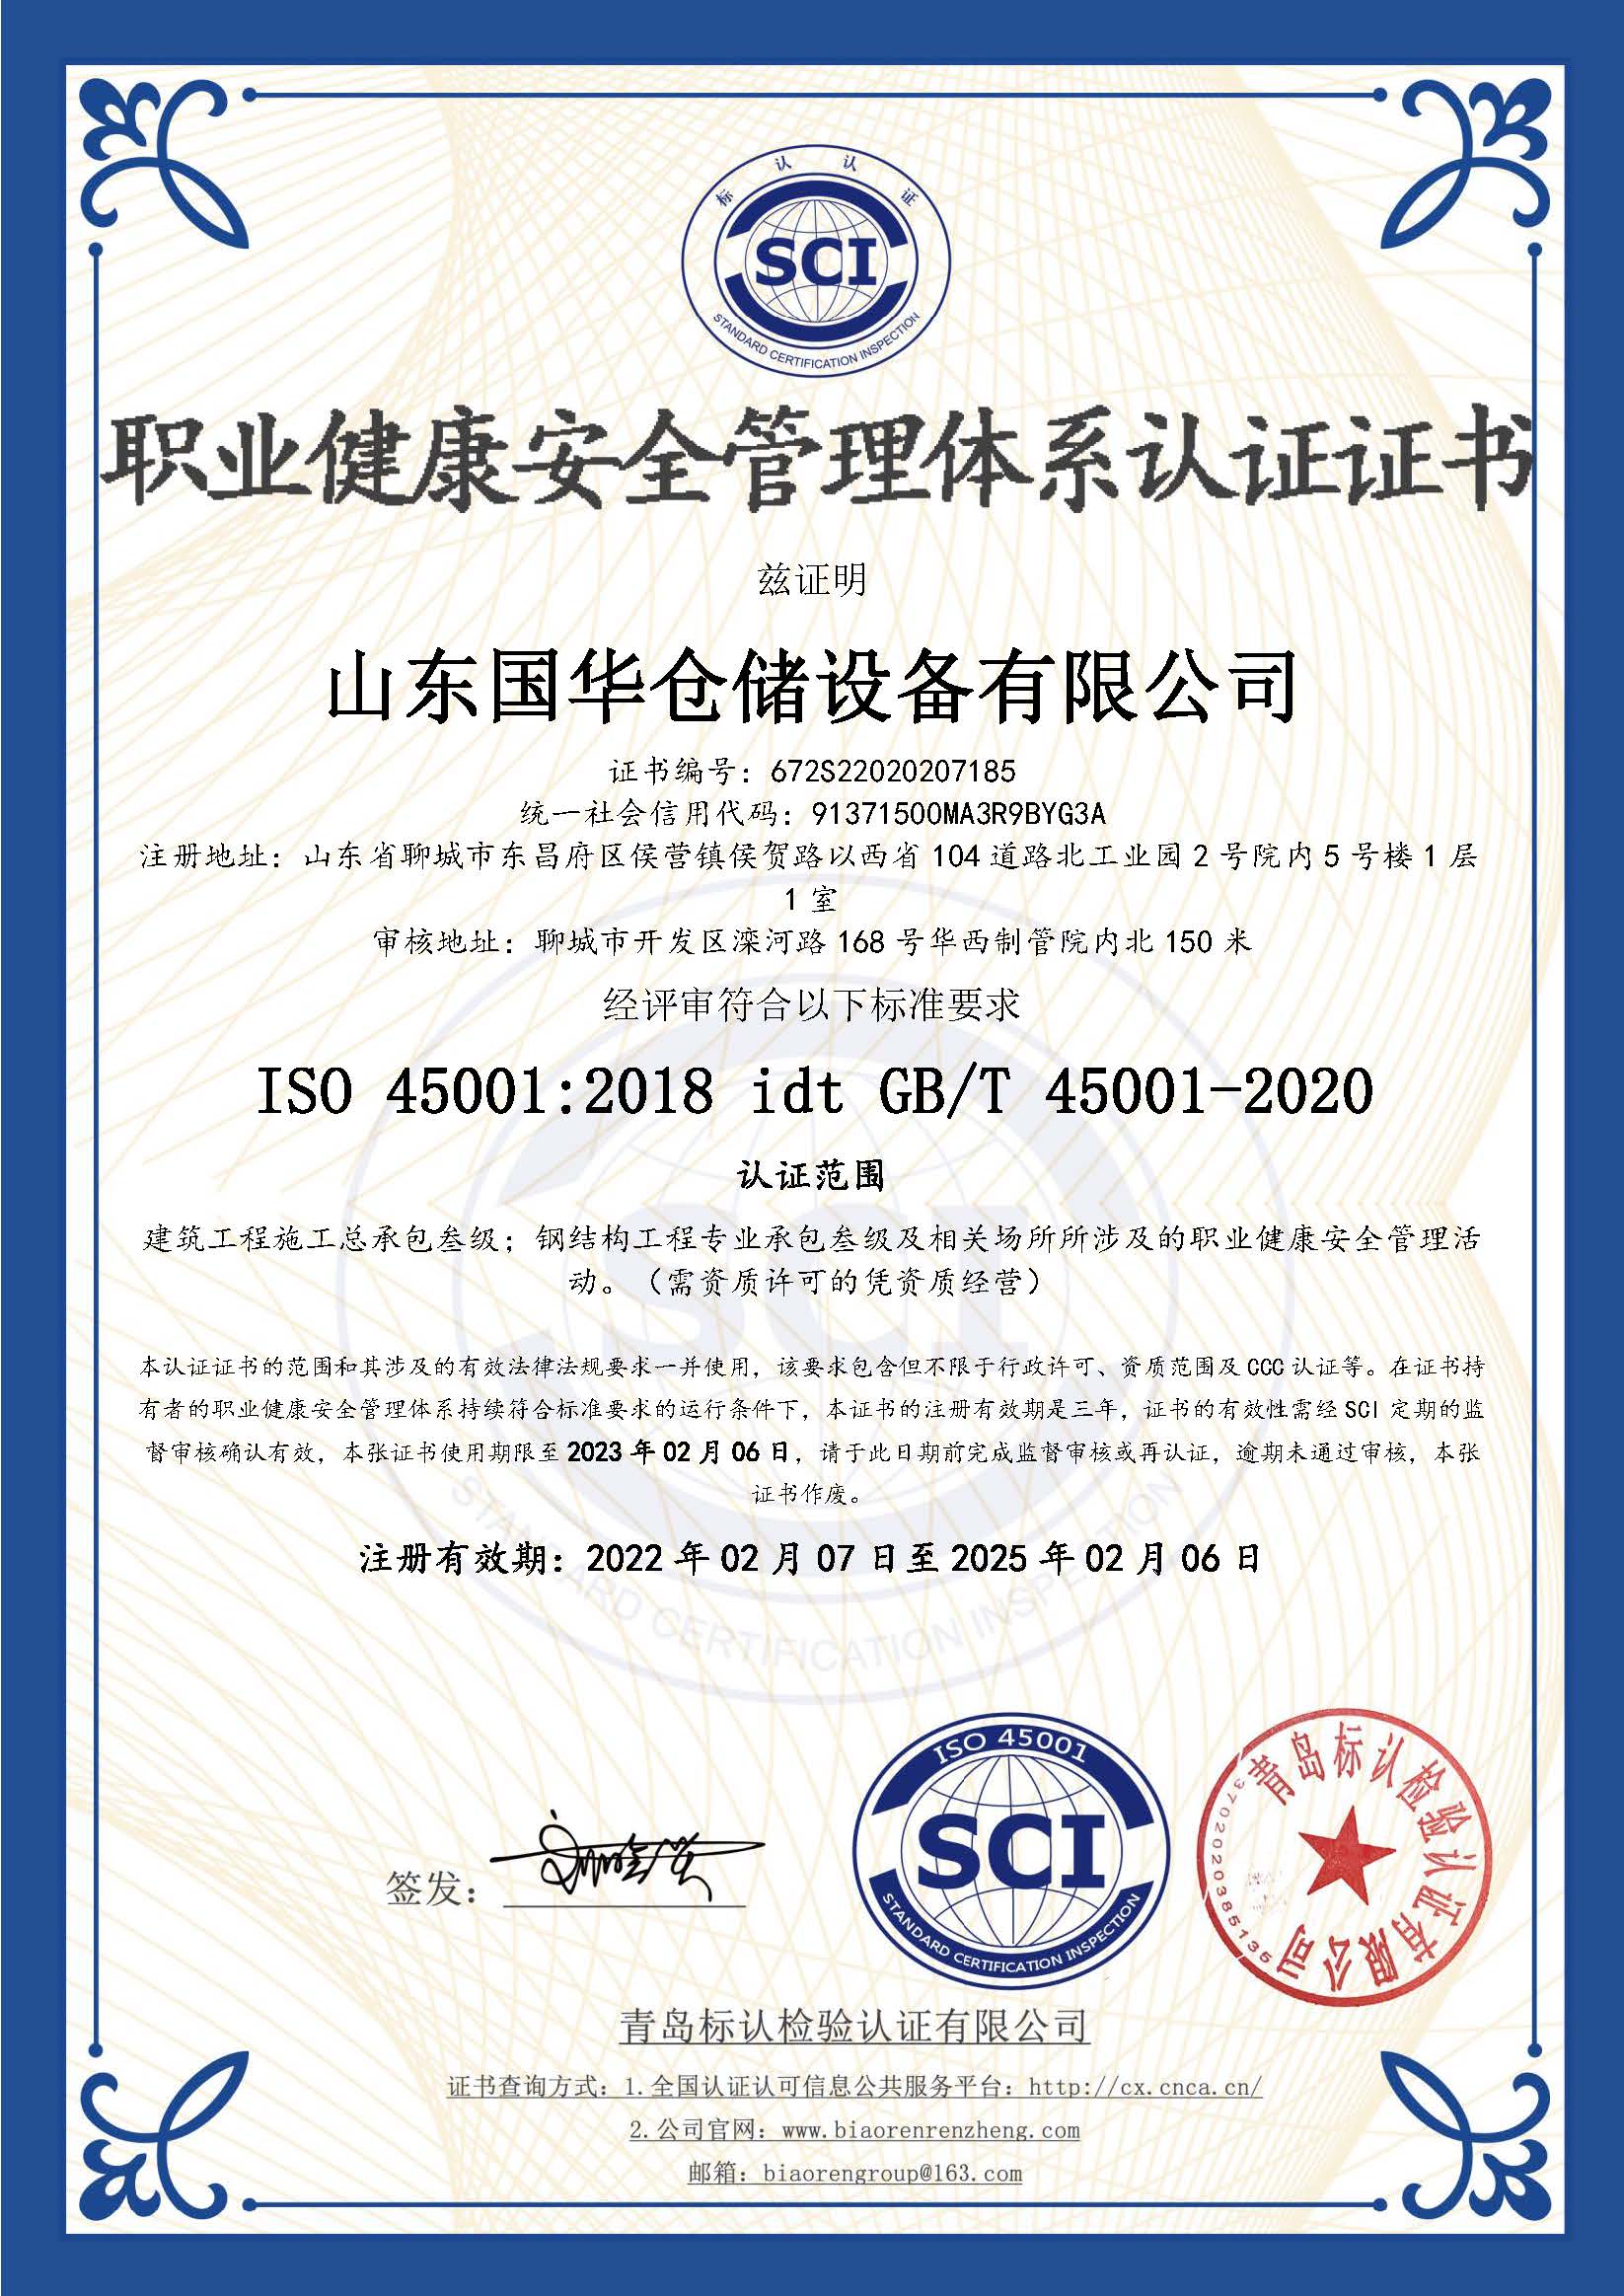 郑州钢板仓职业健康安全管理体系认证证书